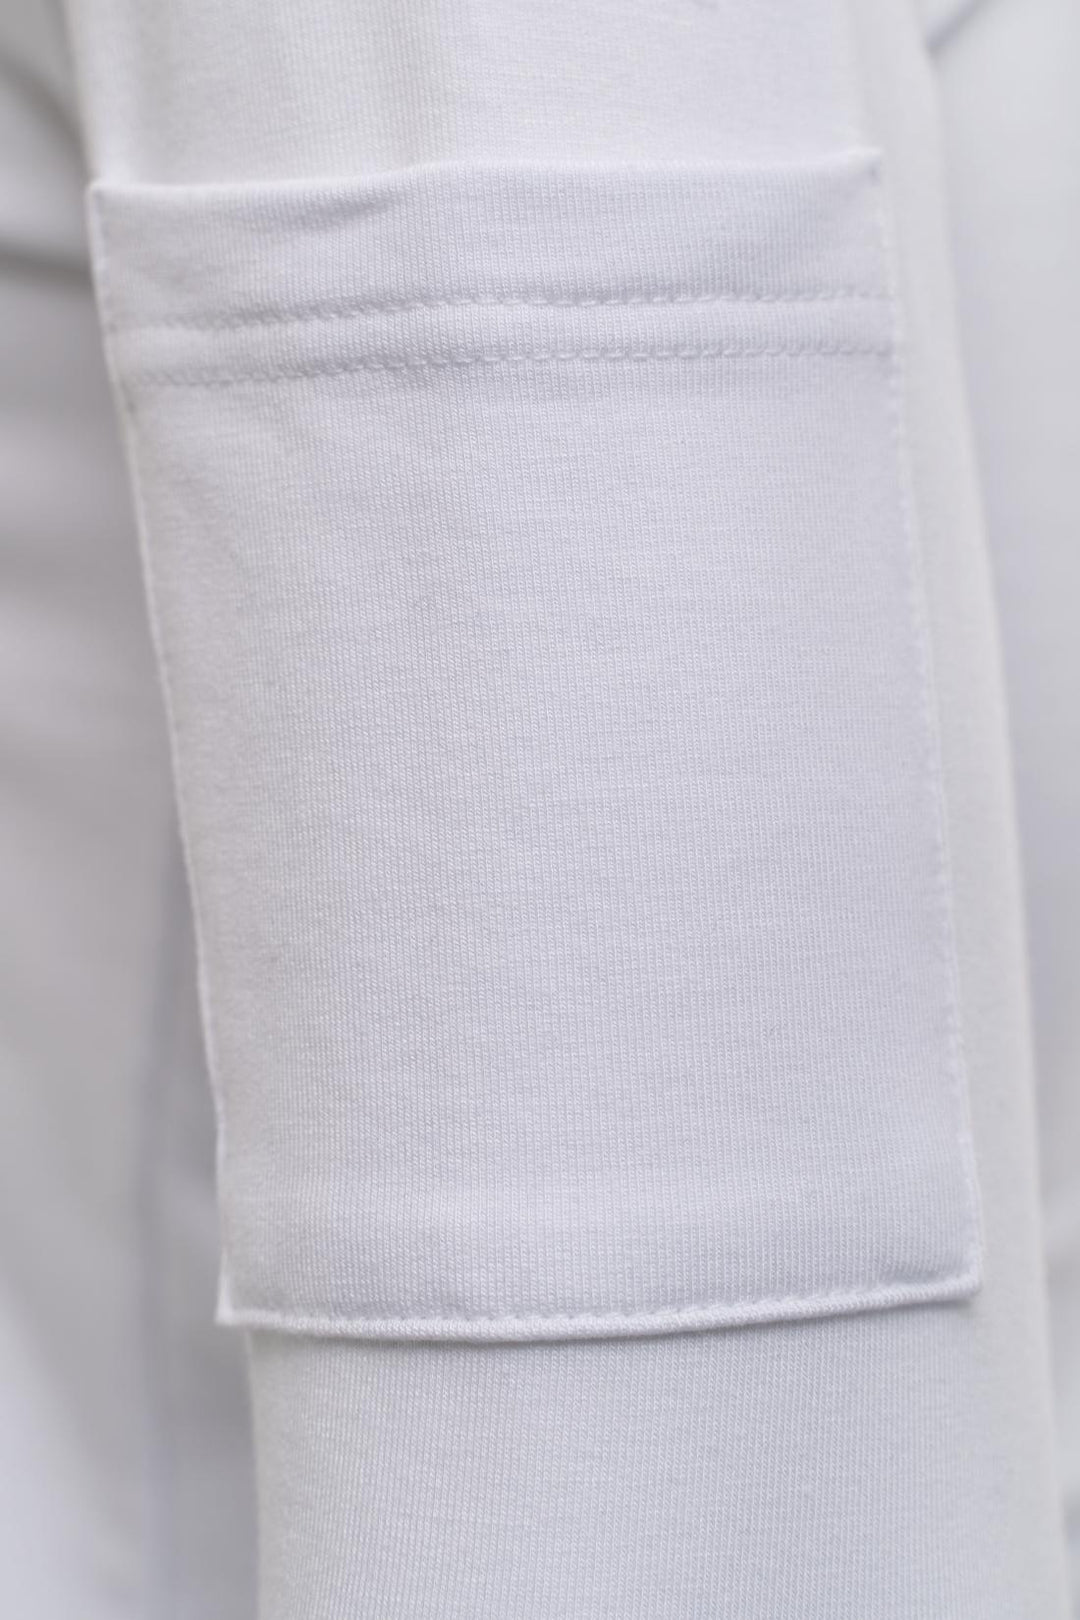 White hoodie sleeve pocket